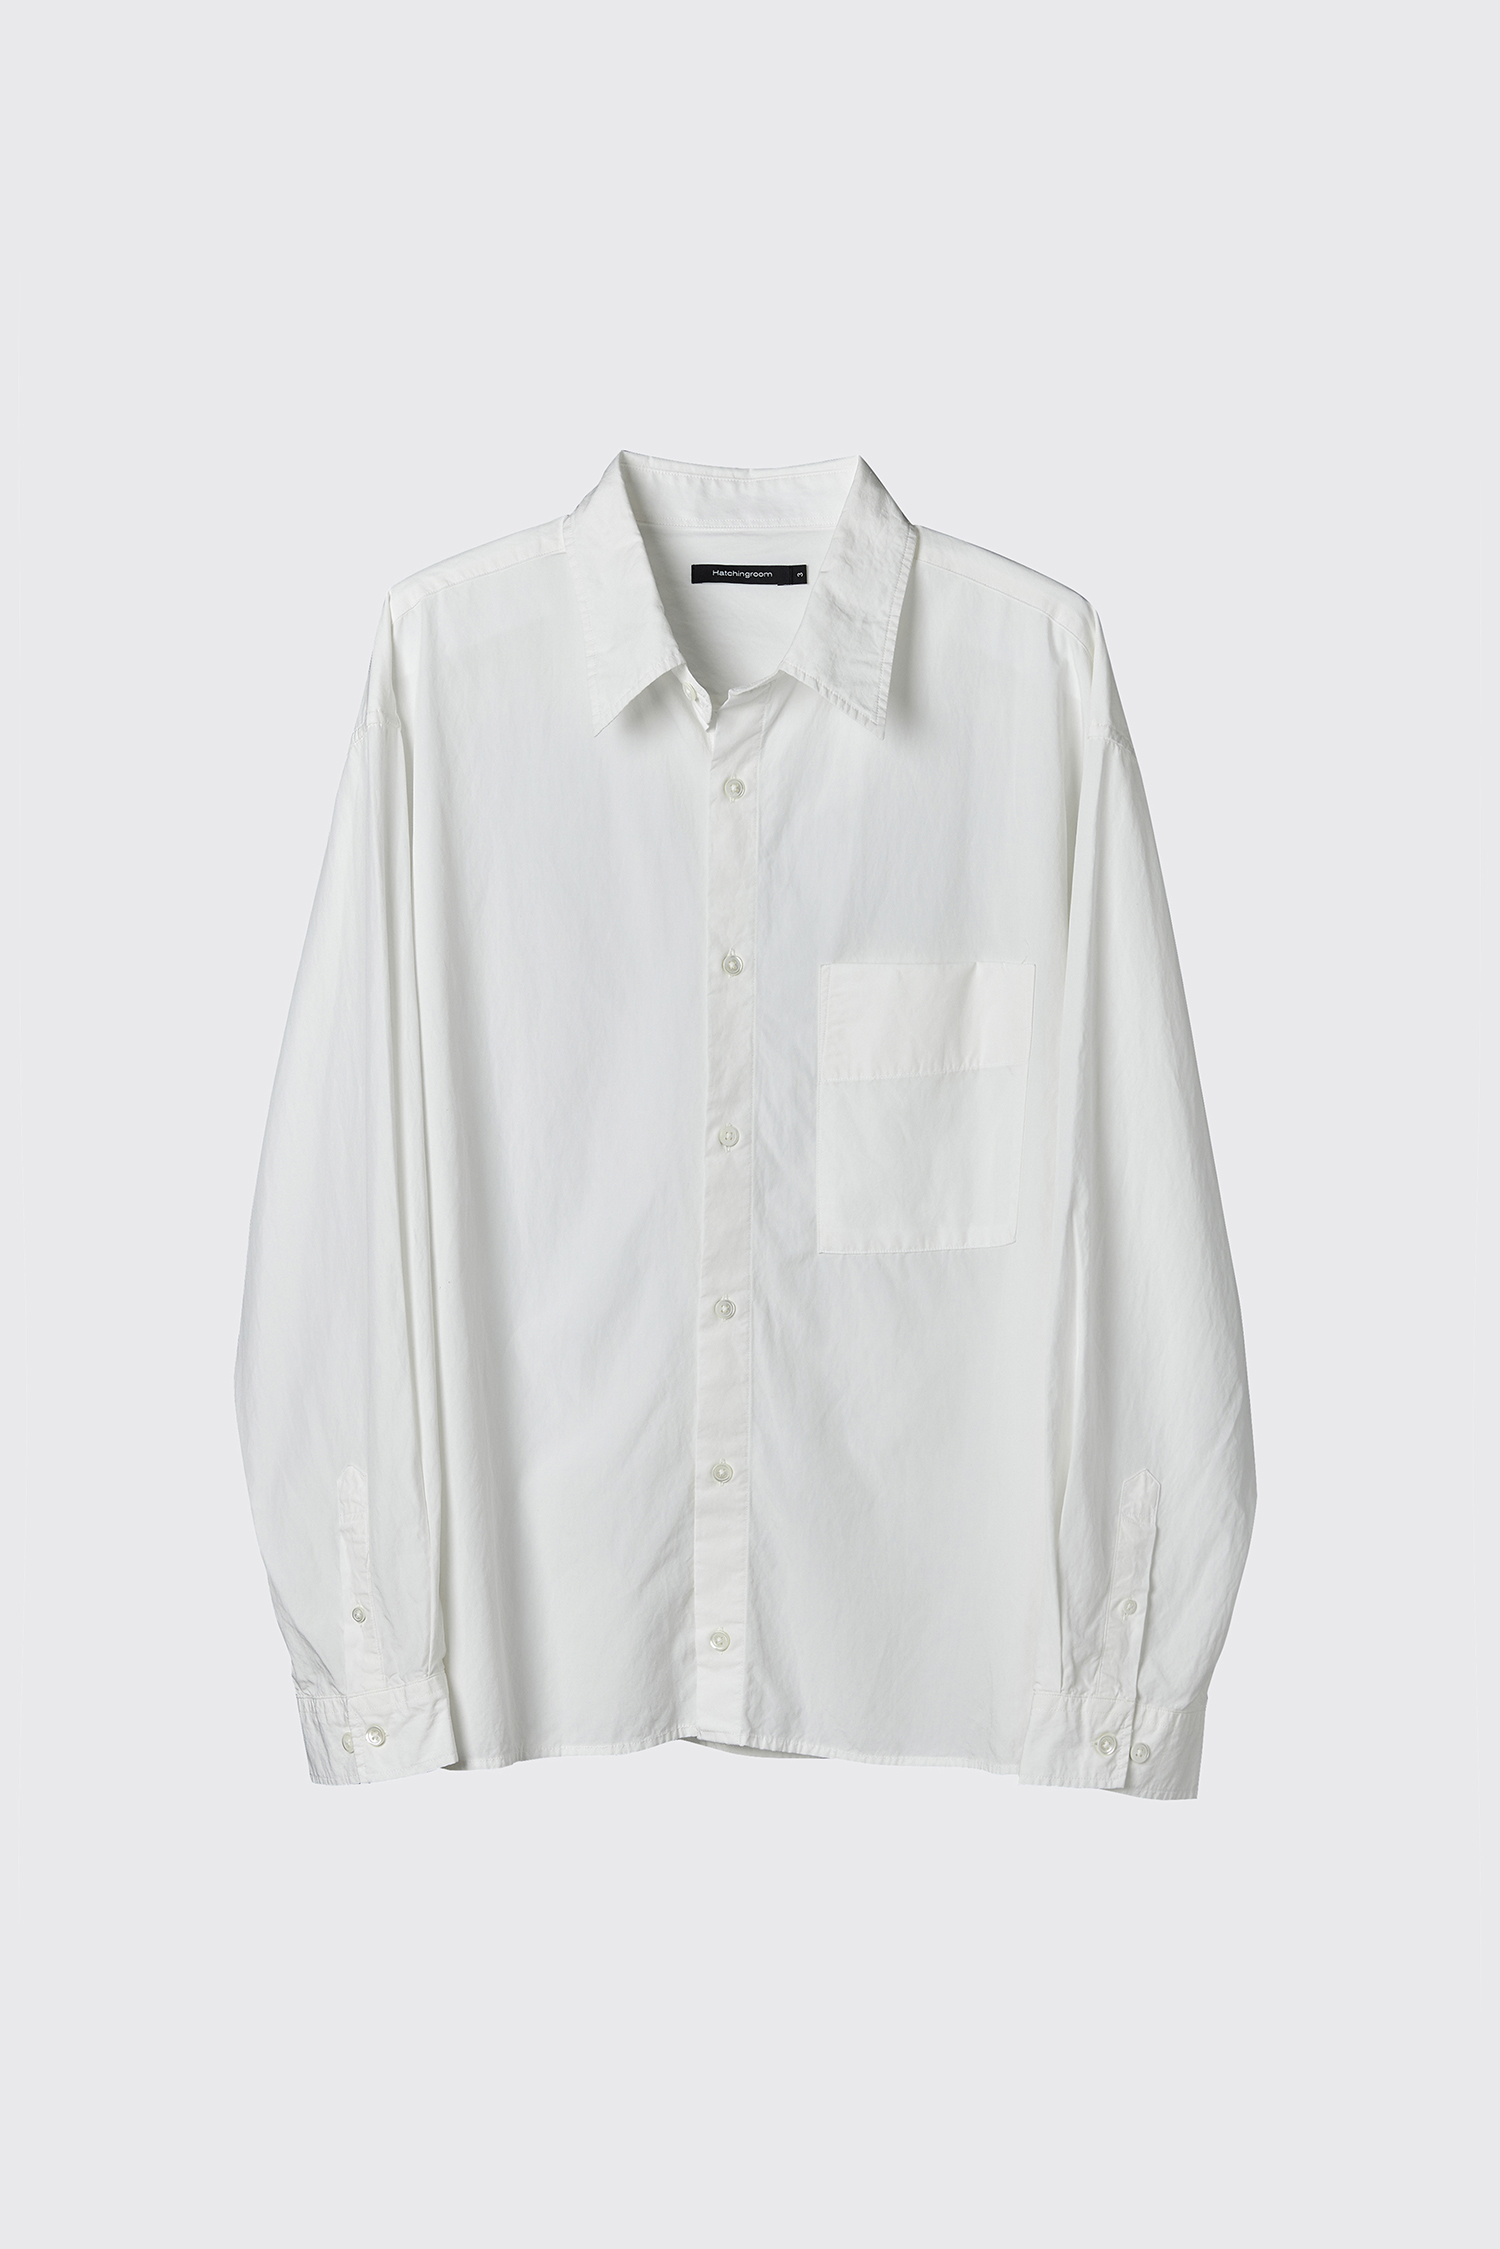 Crop Shirt White (2nd Restock)